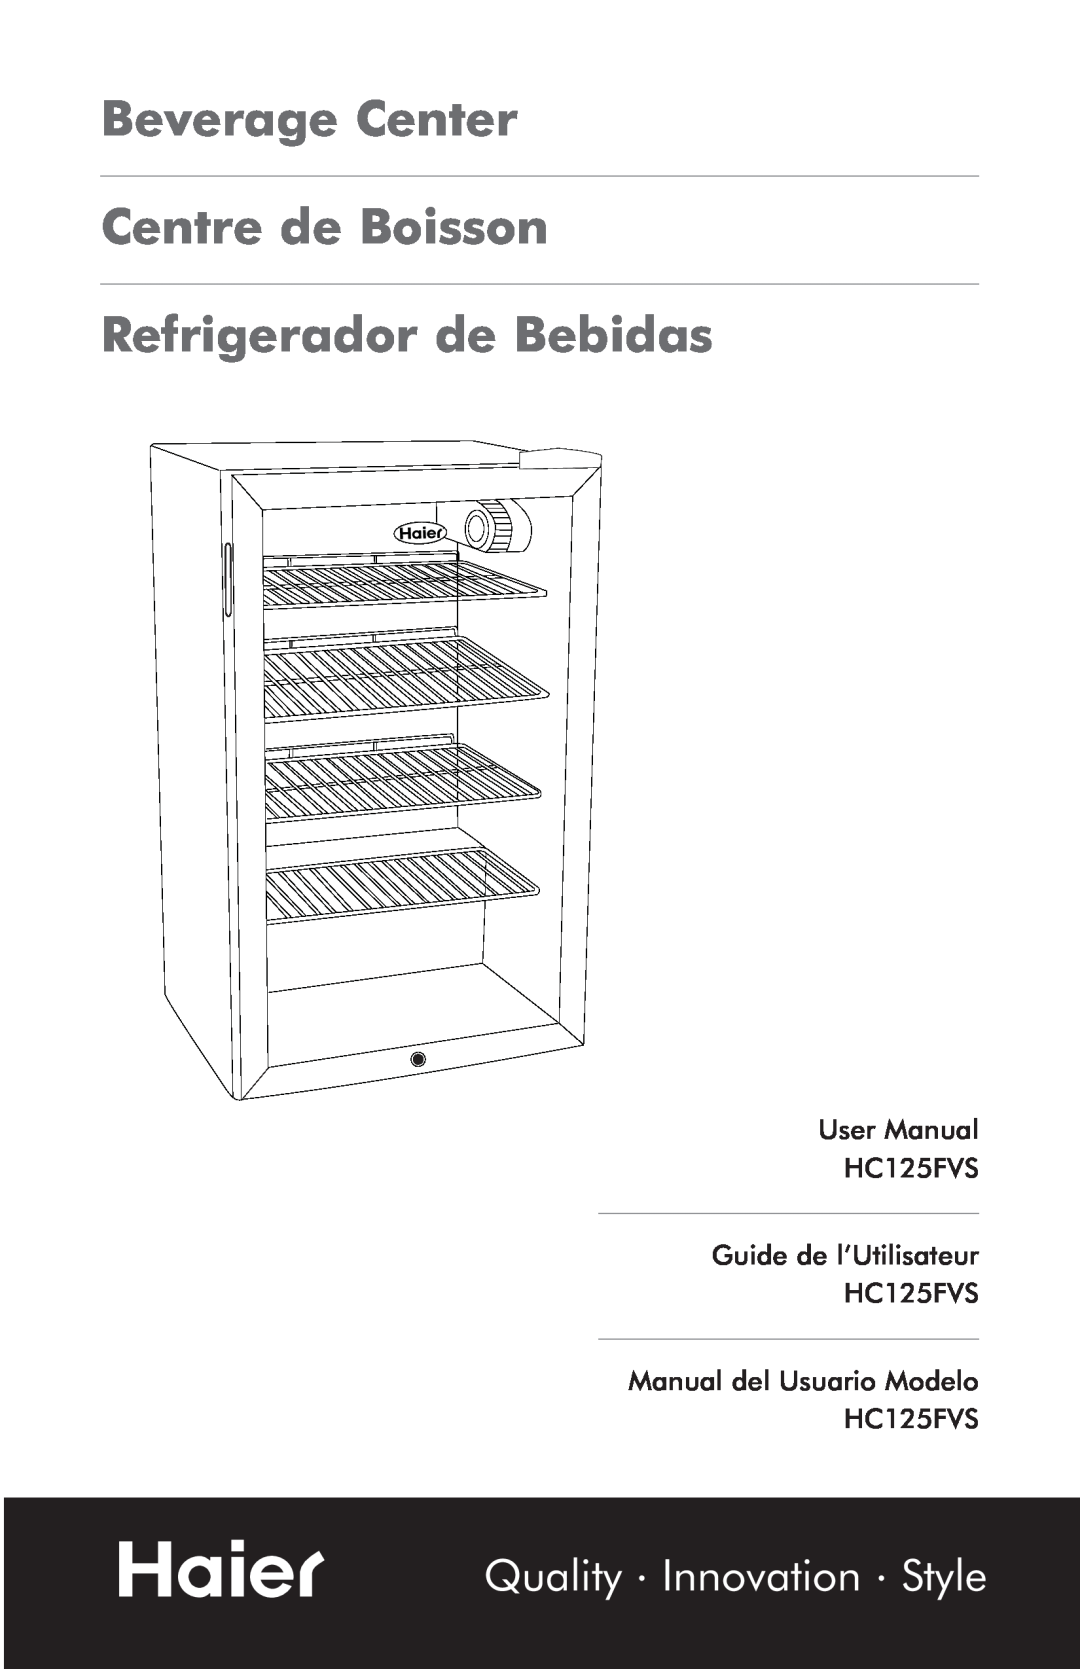 Haier hc125fvs user manual Beverage Center Centre de Boisson, Refrigerador de Bebidas, Quality Innovation Style 